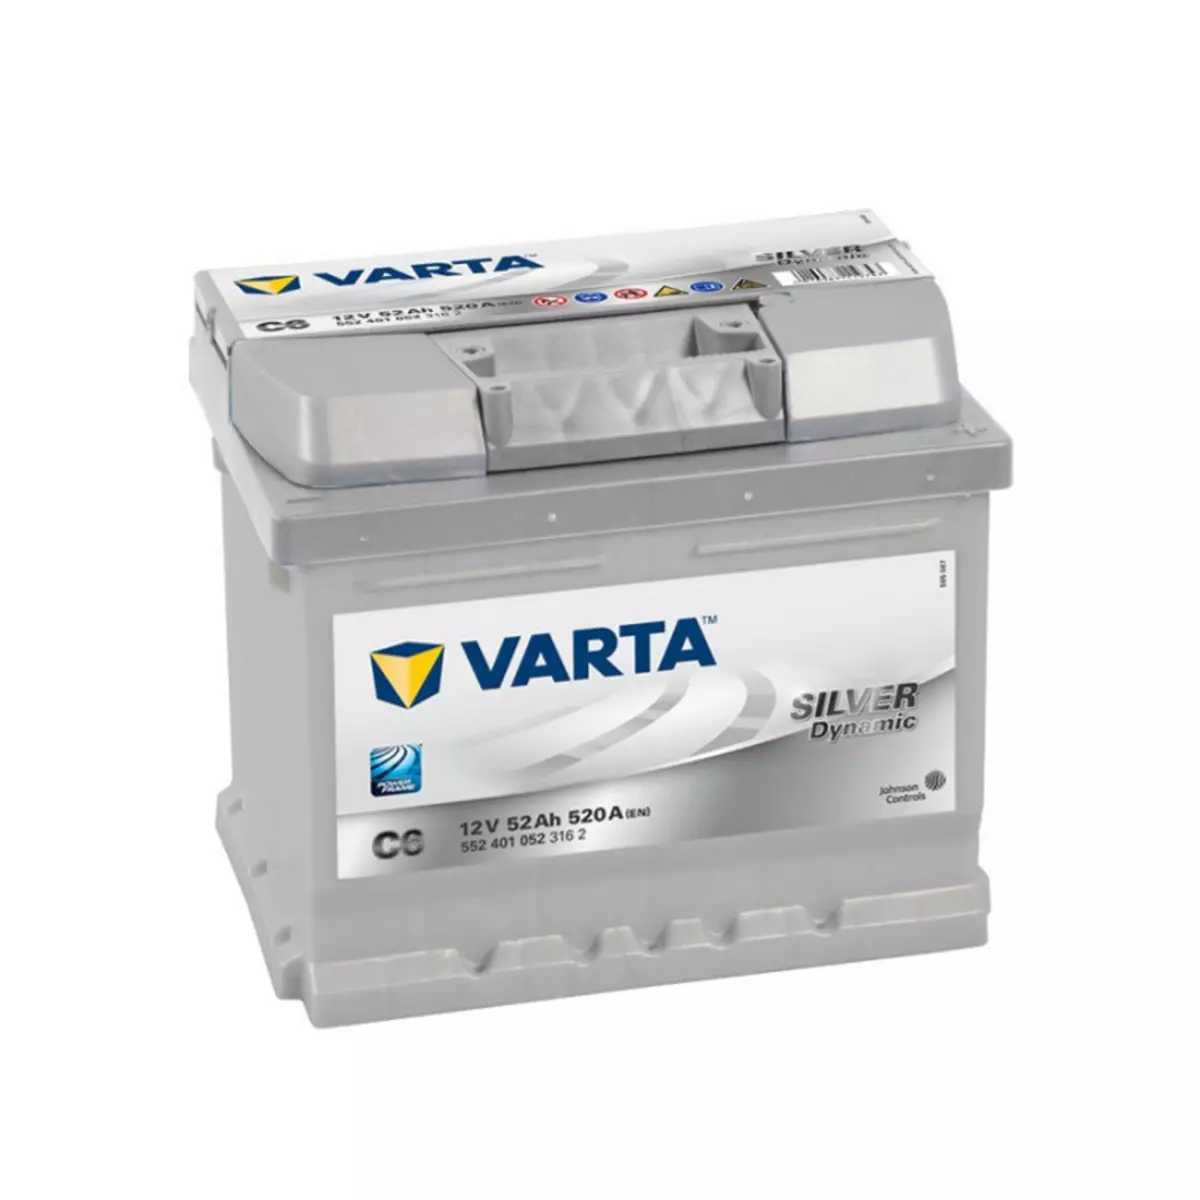 Varta Batterie Varta Silver Dynamic C6 12v 52ah 520A 552 401 052